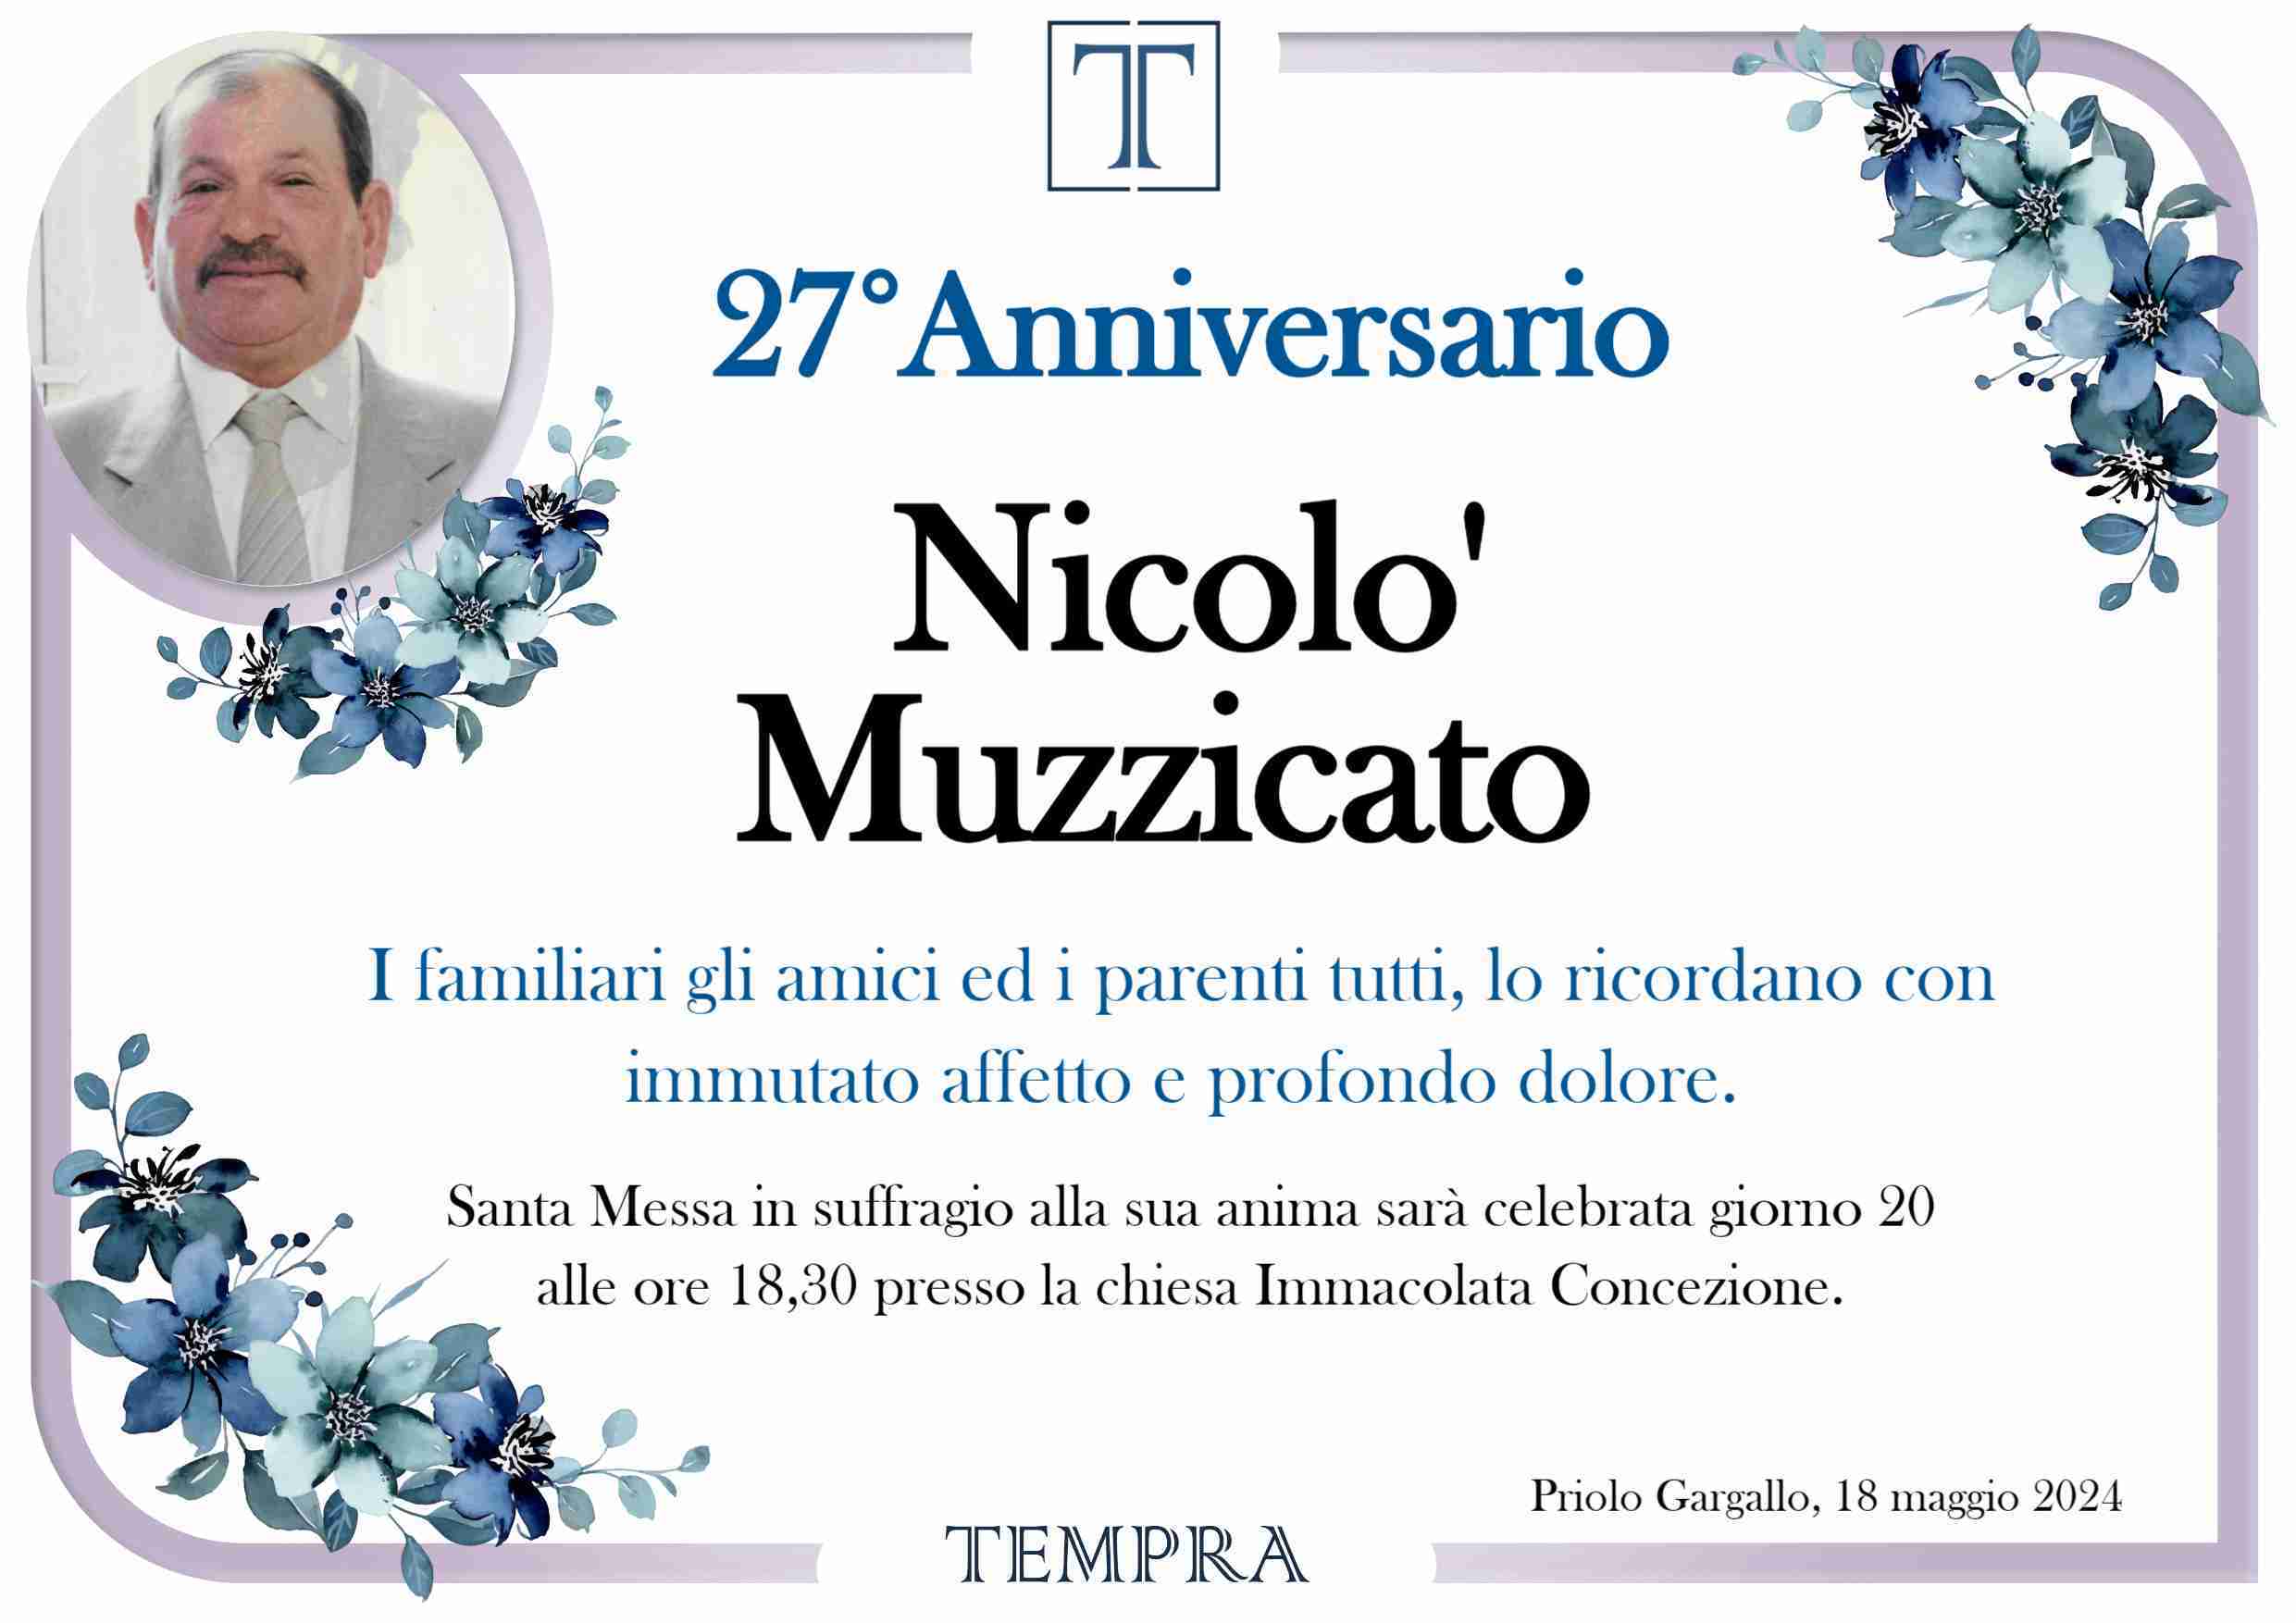 Nicolo' Muzzicato